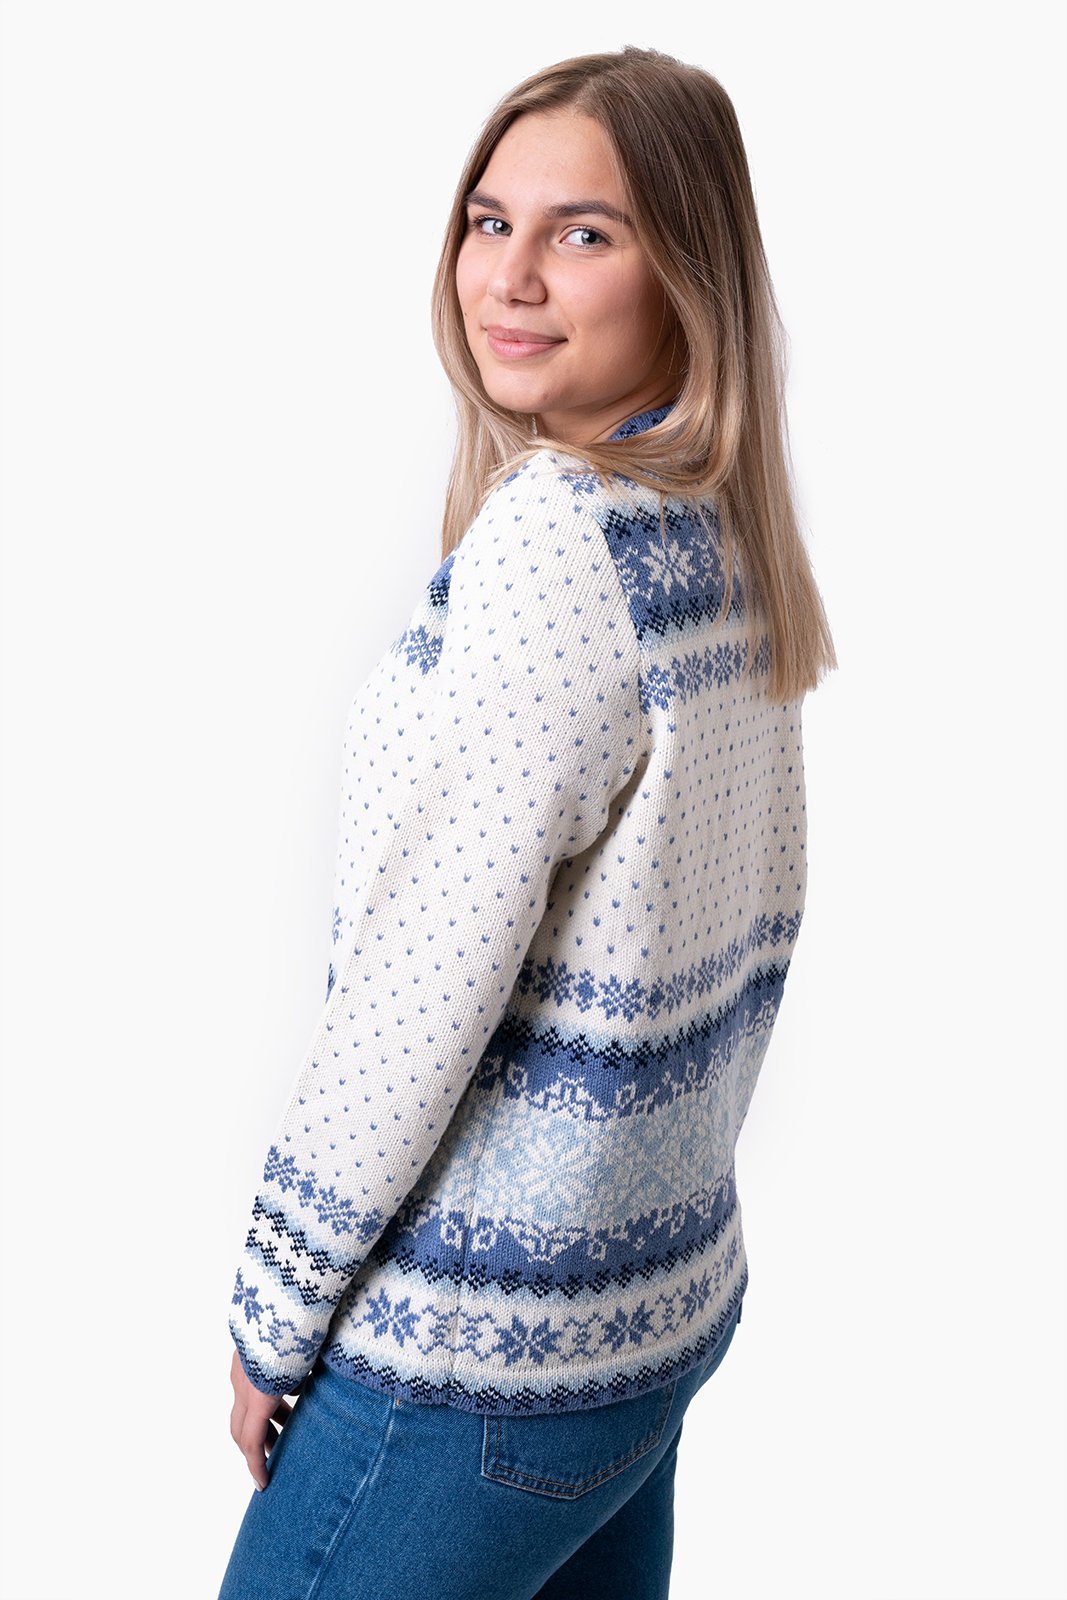 Tori jacquard knit cardigan - Natural Style Estonia